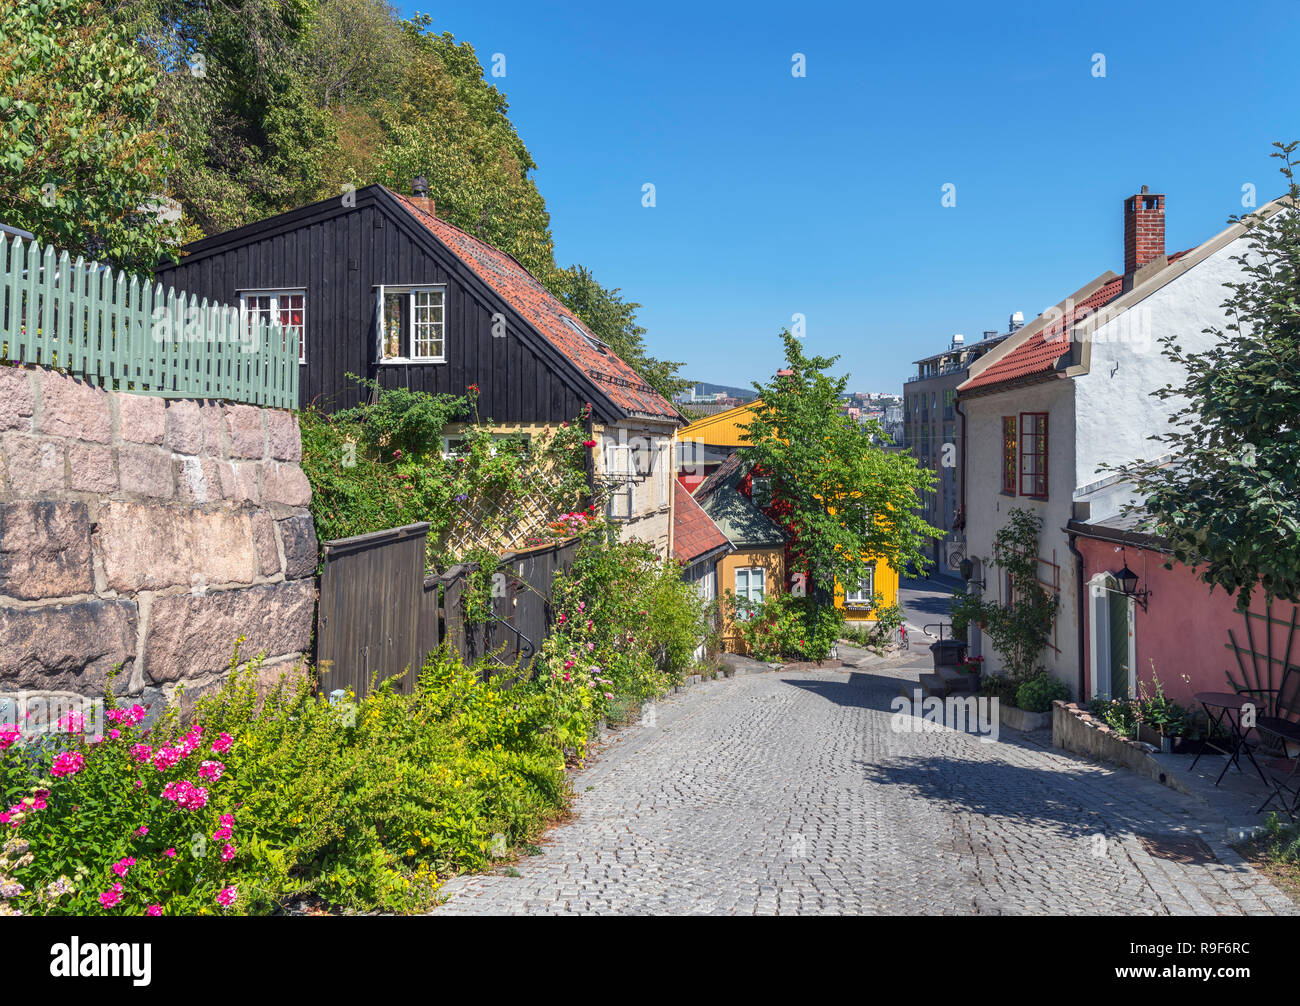 Las casas tradicionales de Damstredet, Oslo, Noruega Foto de stock